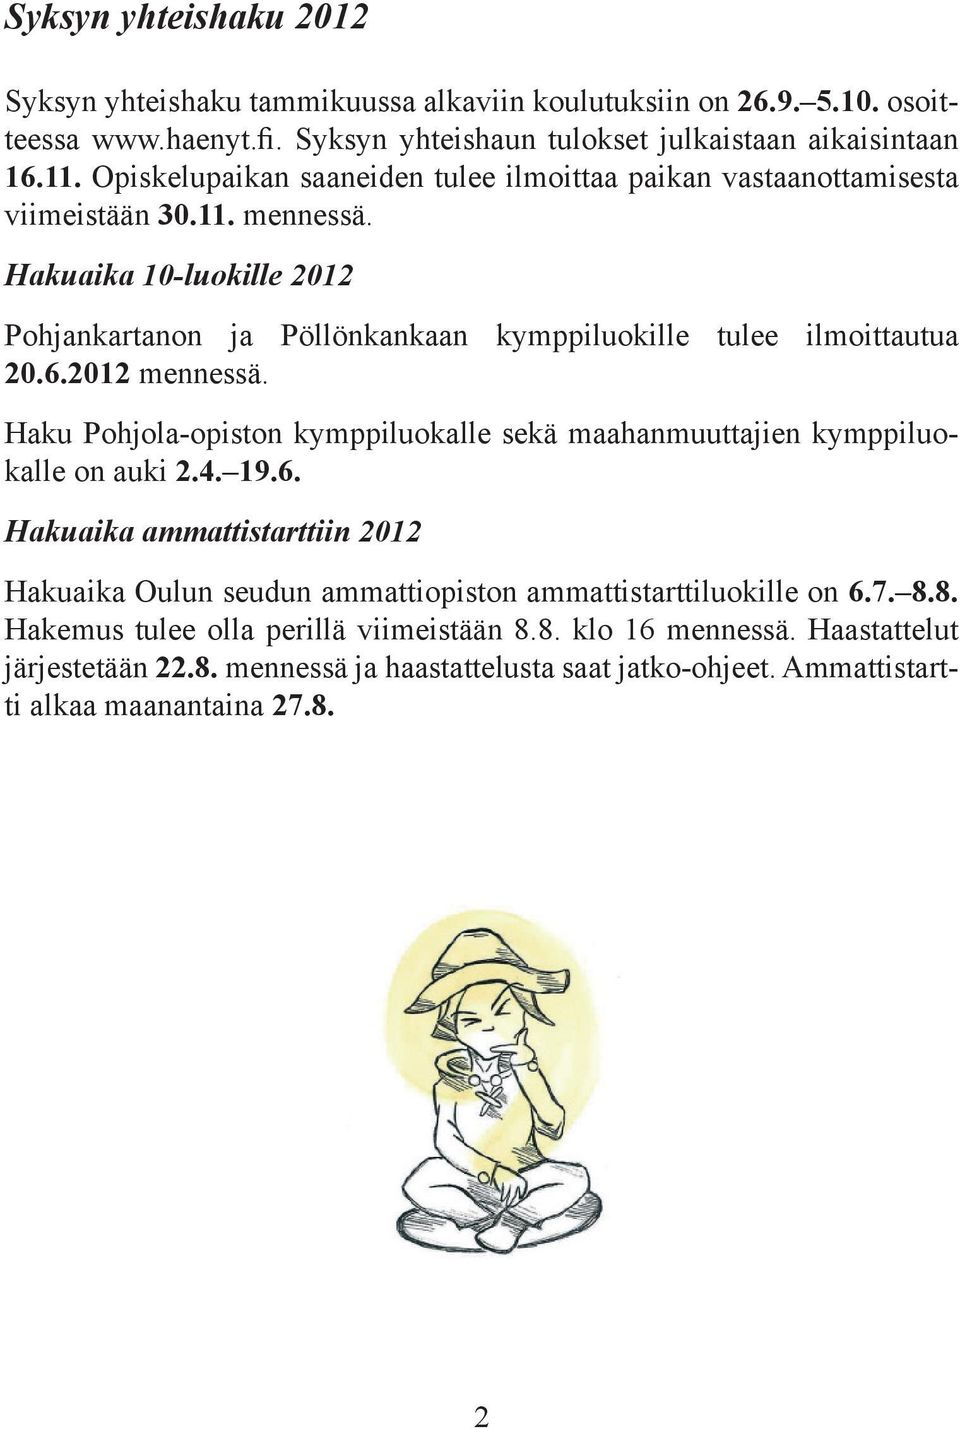 Hakuaika 10-luokille 2012 Pohjankartanon ja Pöllönkankaan kymppiluokille tulee ilmoittautua 20.6.2012 mennessä.